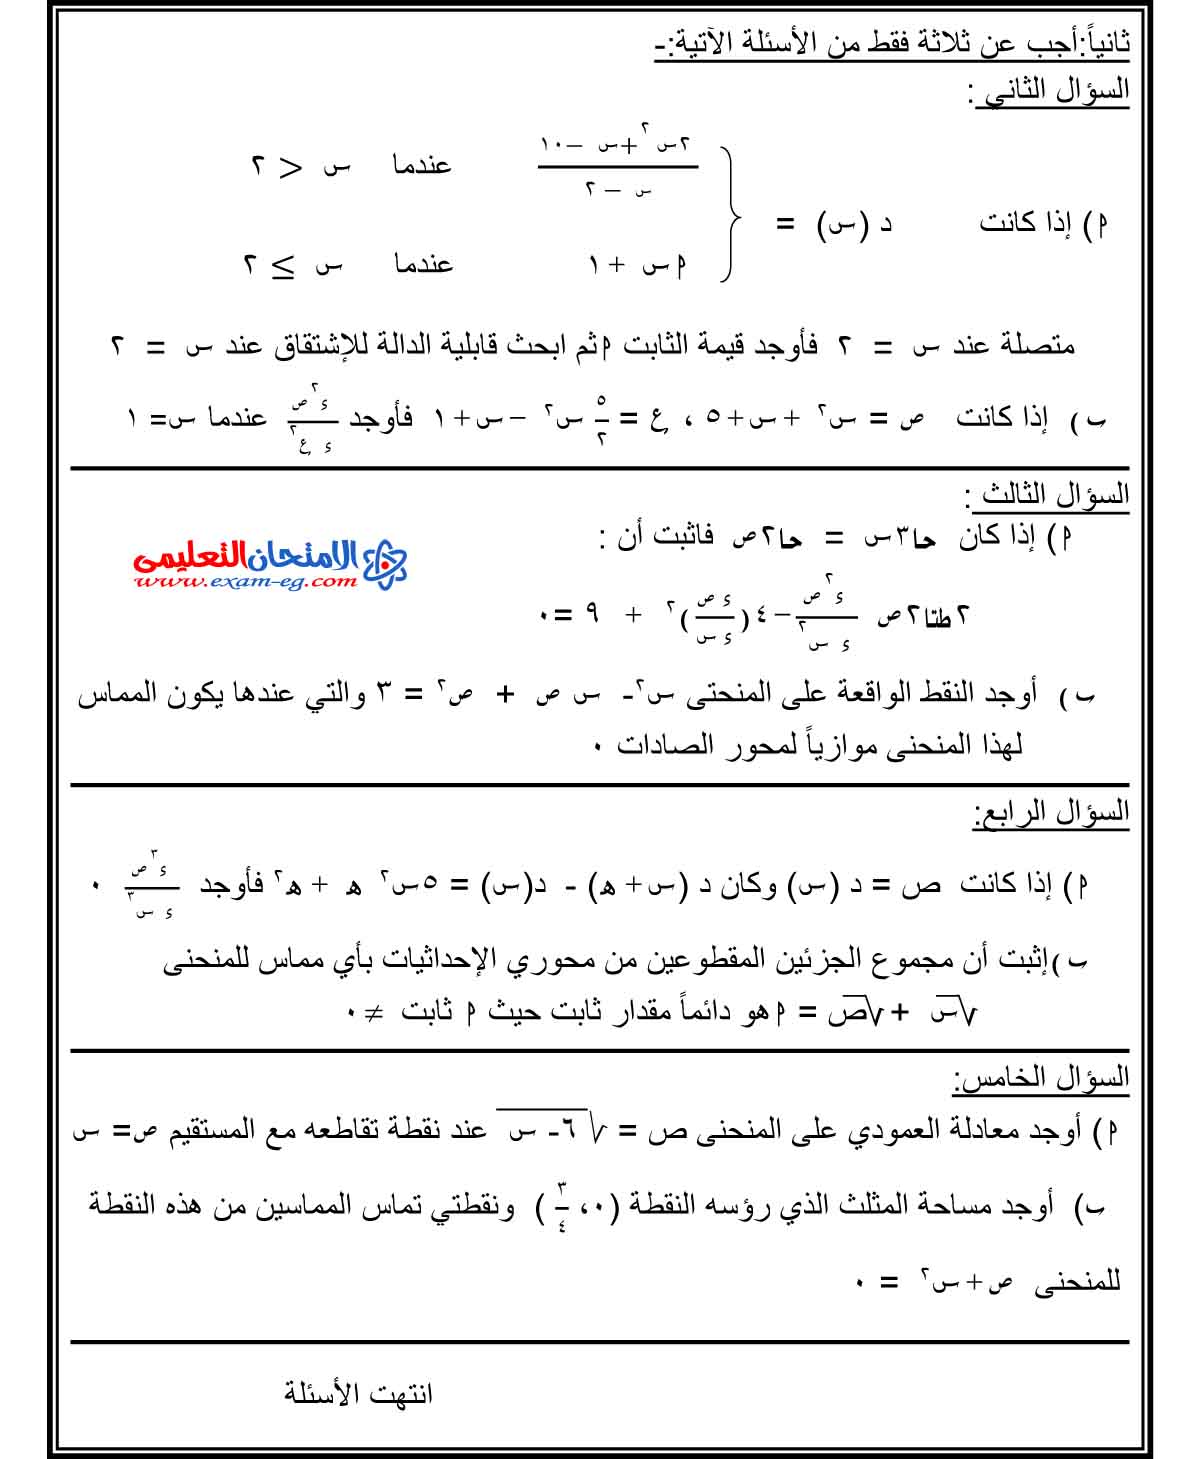 تفاضل وتكامل 1 - الامتحان التعليمى-2